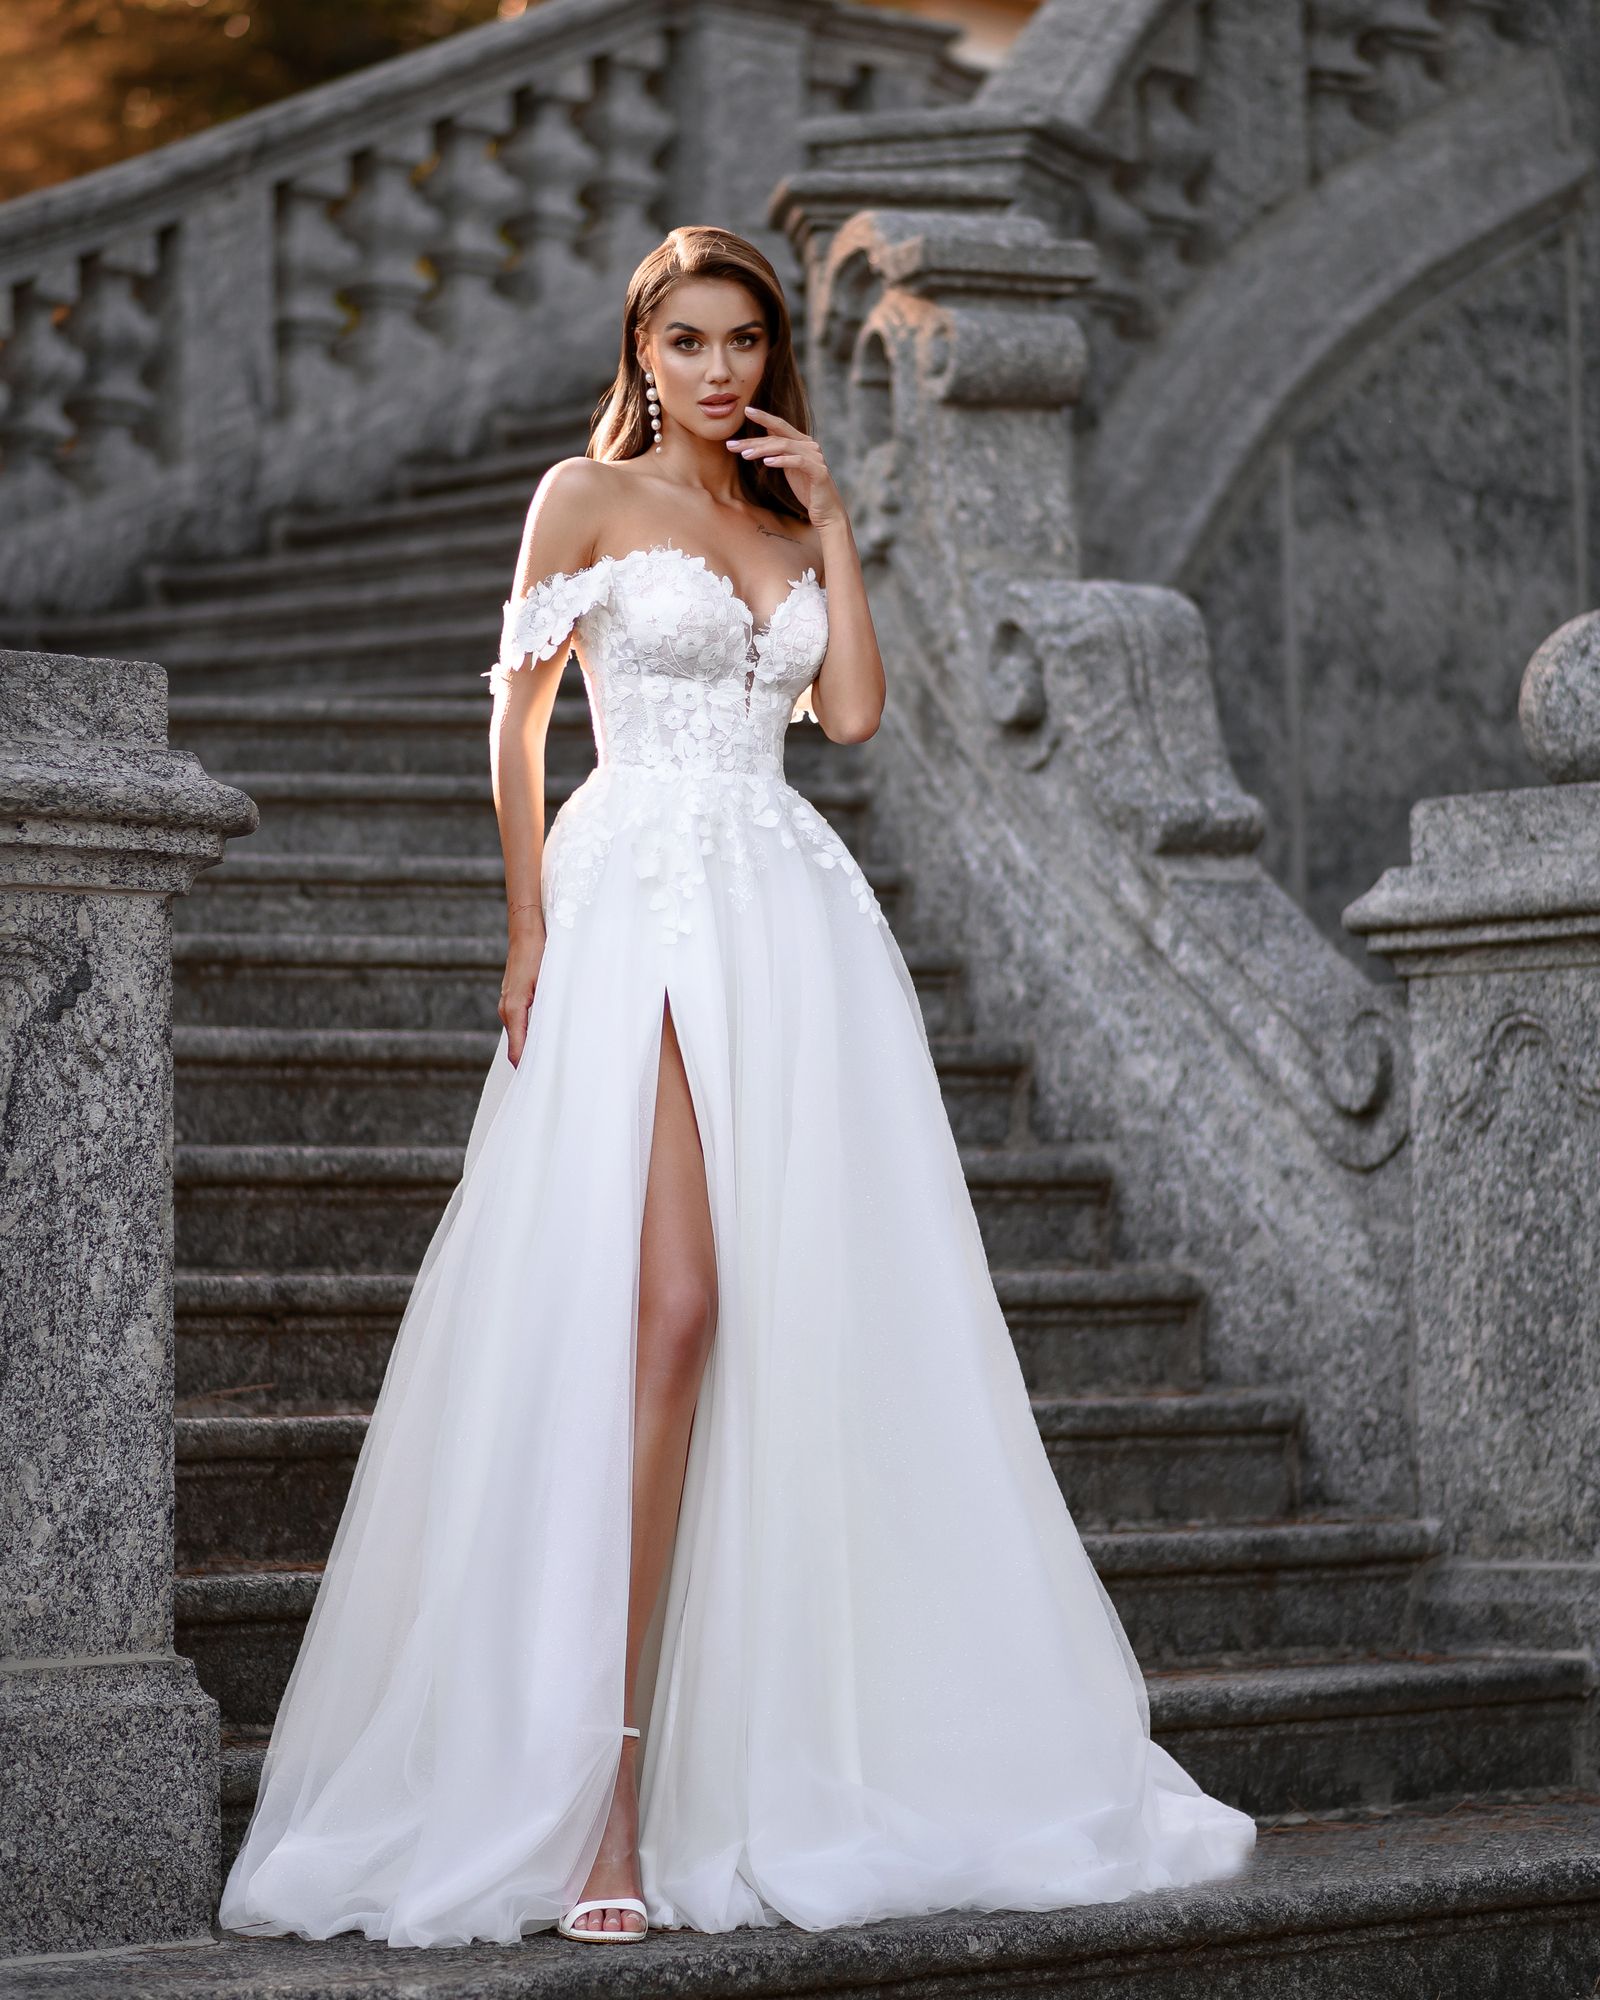 Wholesale Plain White Corset Top Bridal